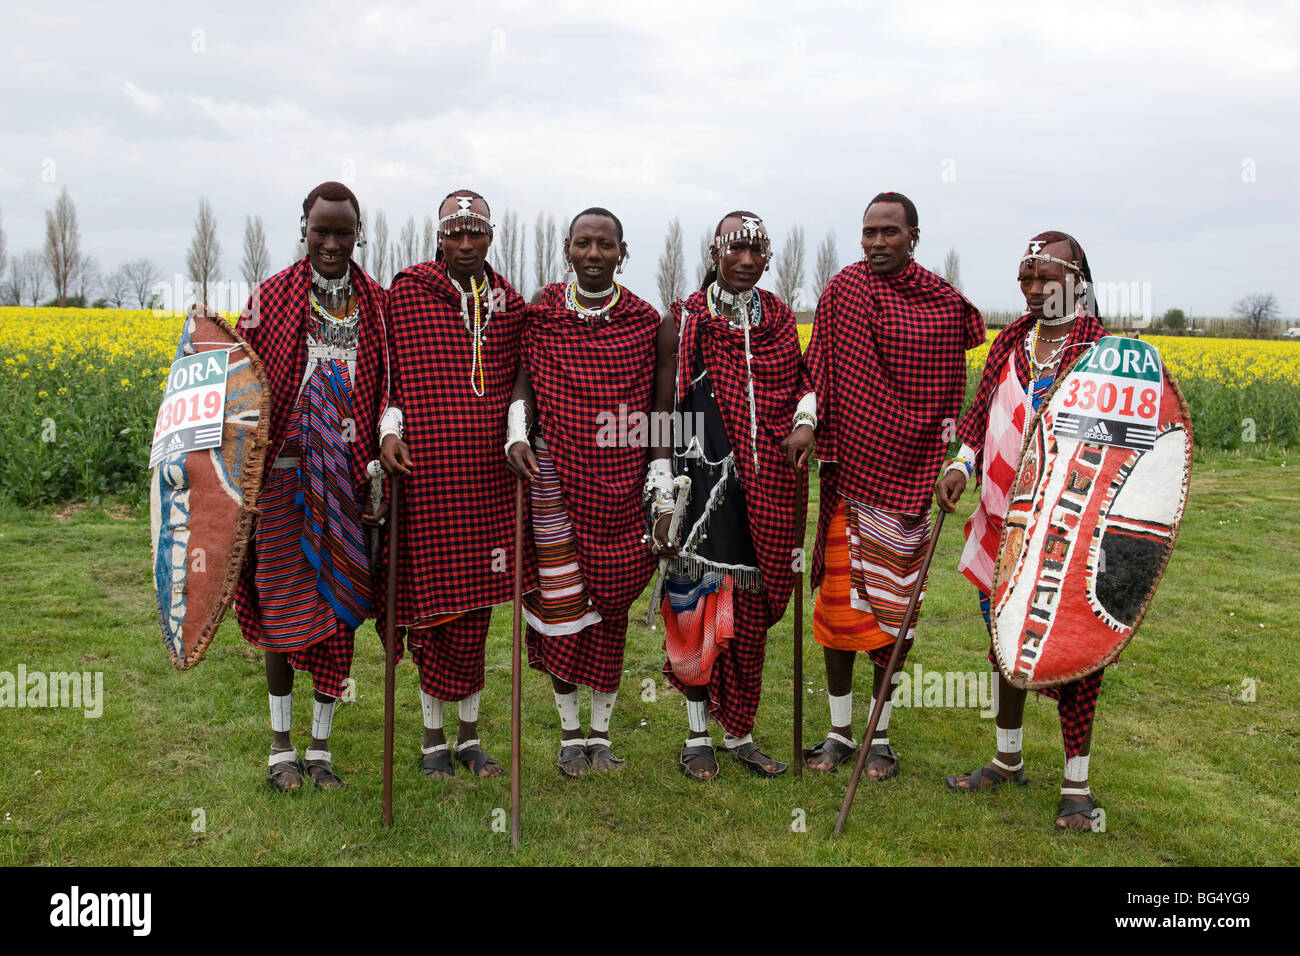 Guerriers maasai du village tanzanien de l'agriculture visite Eluai 'World' dans le Kent. Les Warriors a couru dans le Marathon de Londres 2008 Banque D'Images